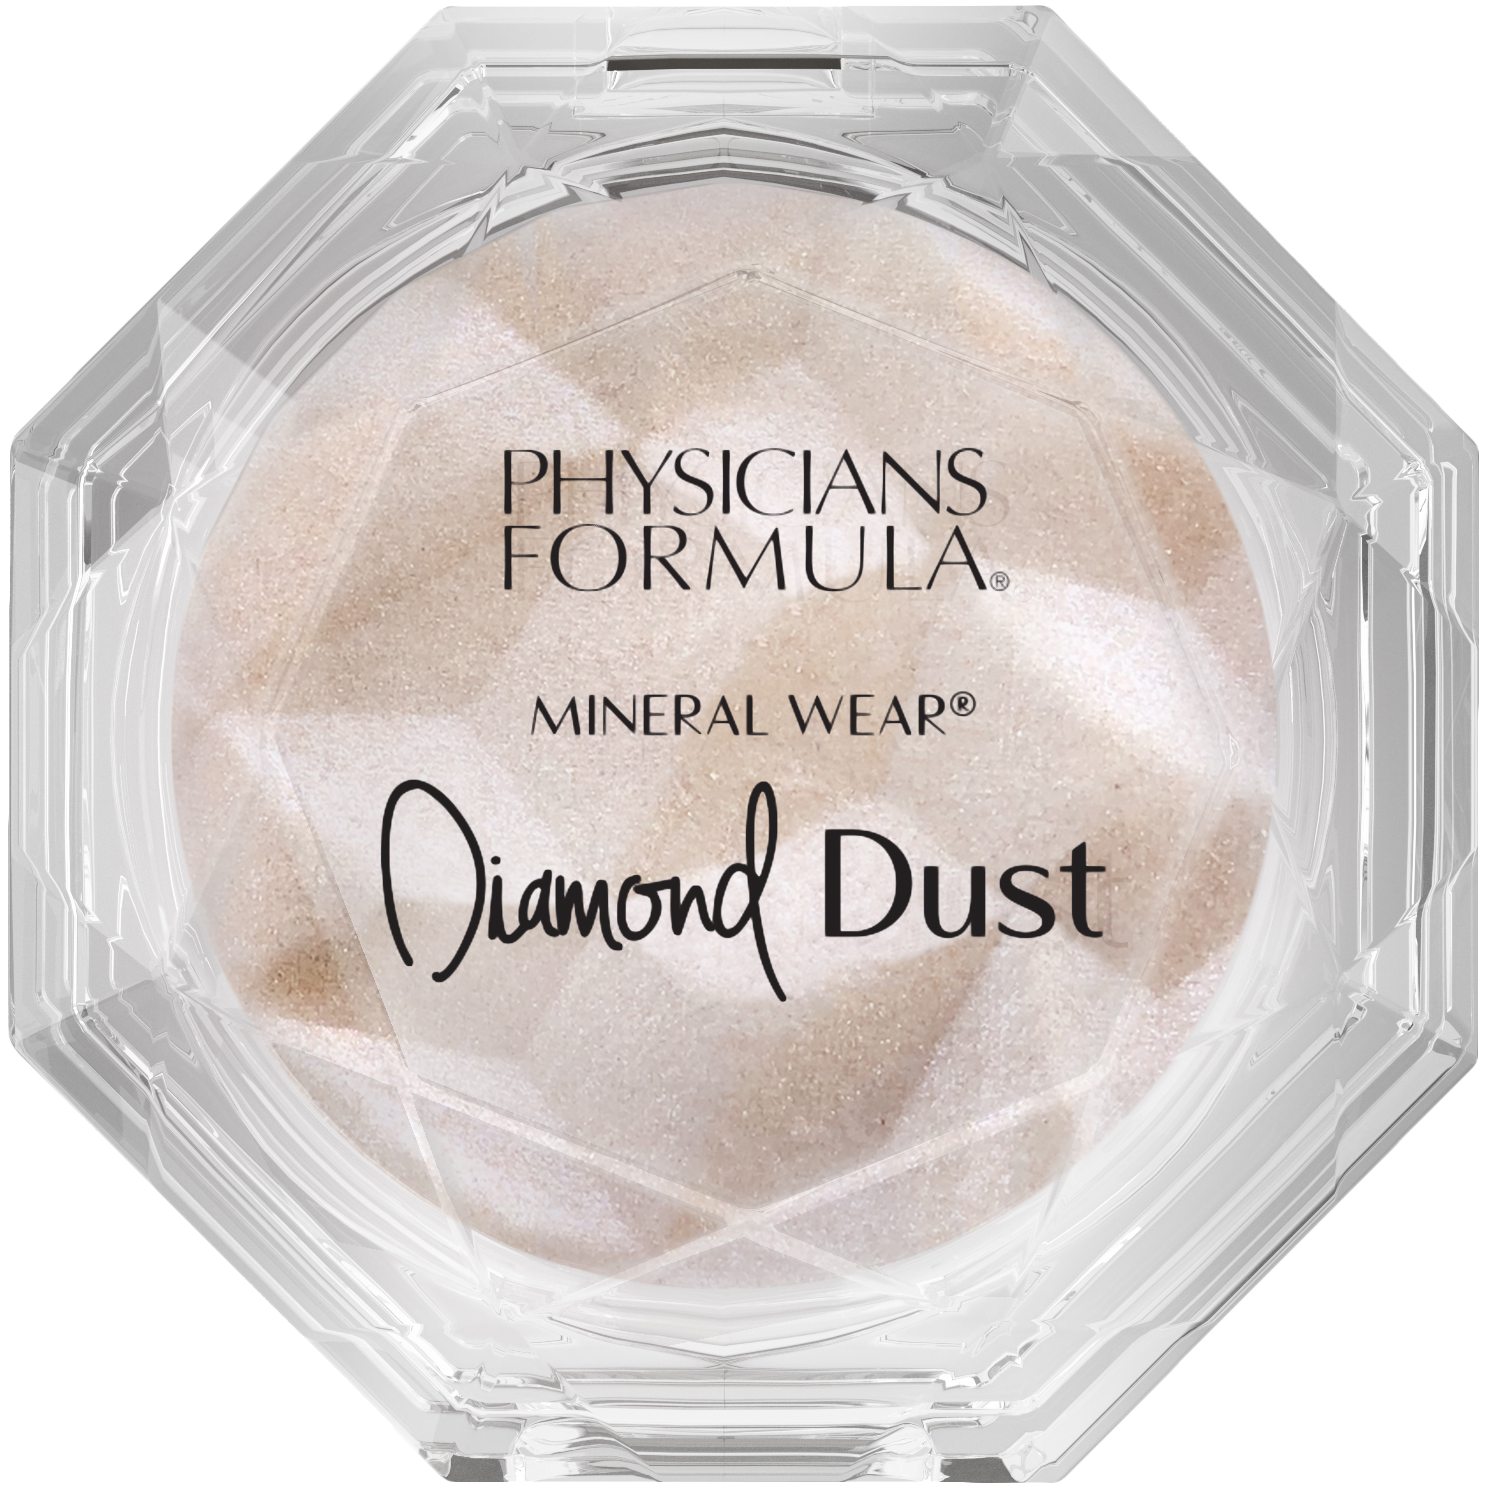 Physicians Formula Mineral Wear Diamond Dust хайлайтер для лица, 11 г цена и фото